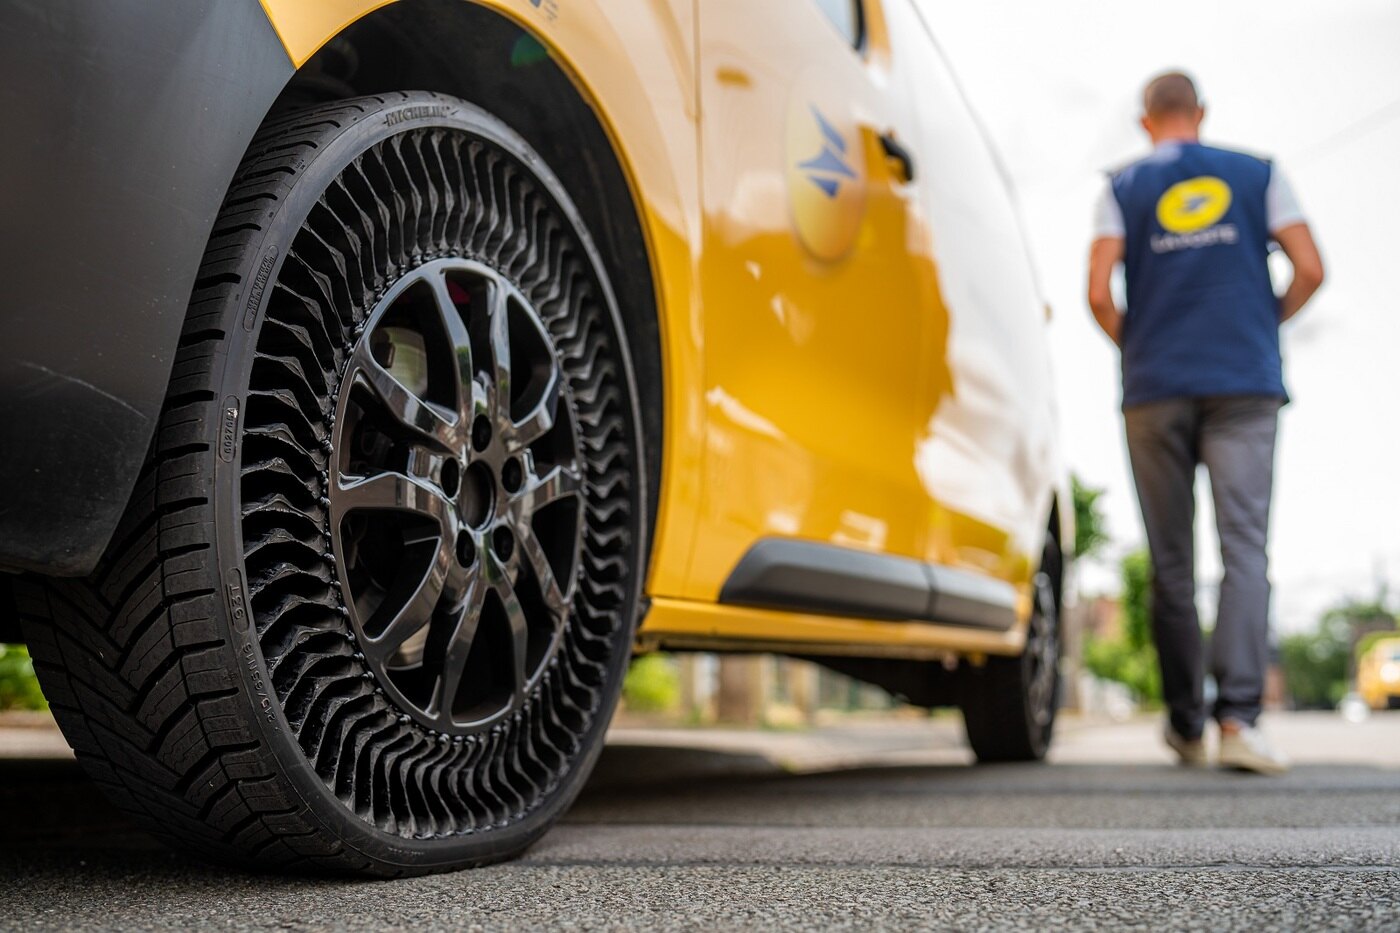 Los neumáticos que no se pinchan llegan a la carretera en varios coches oficiales